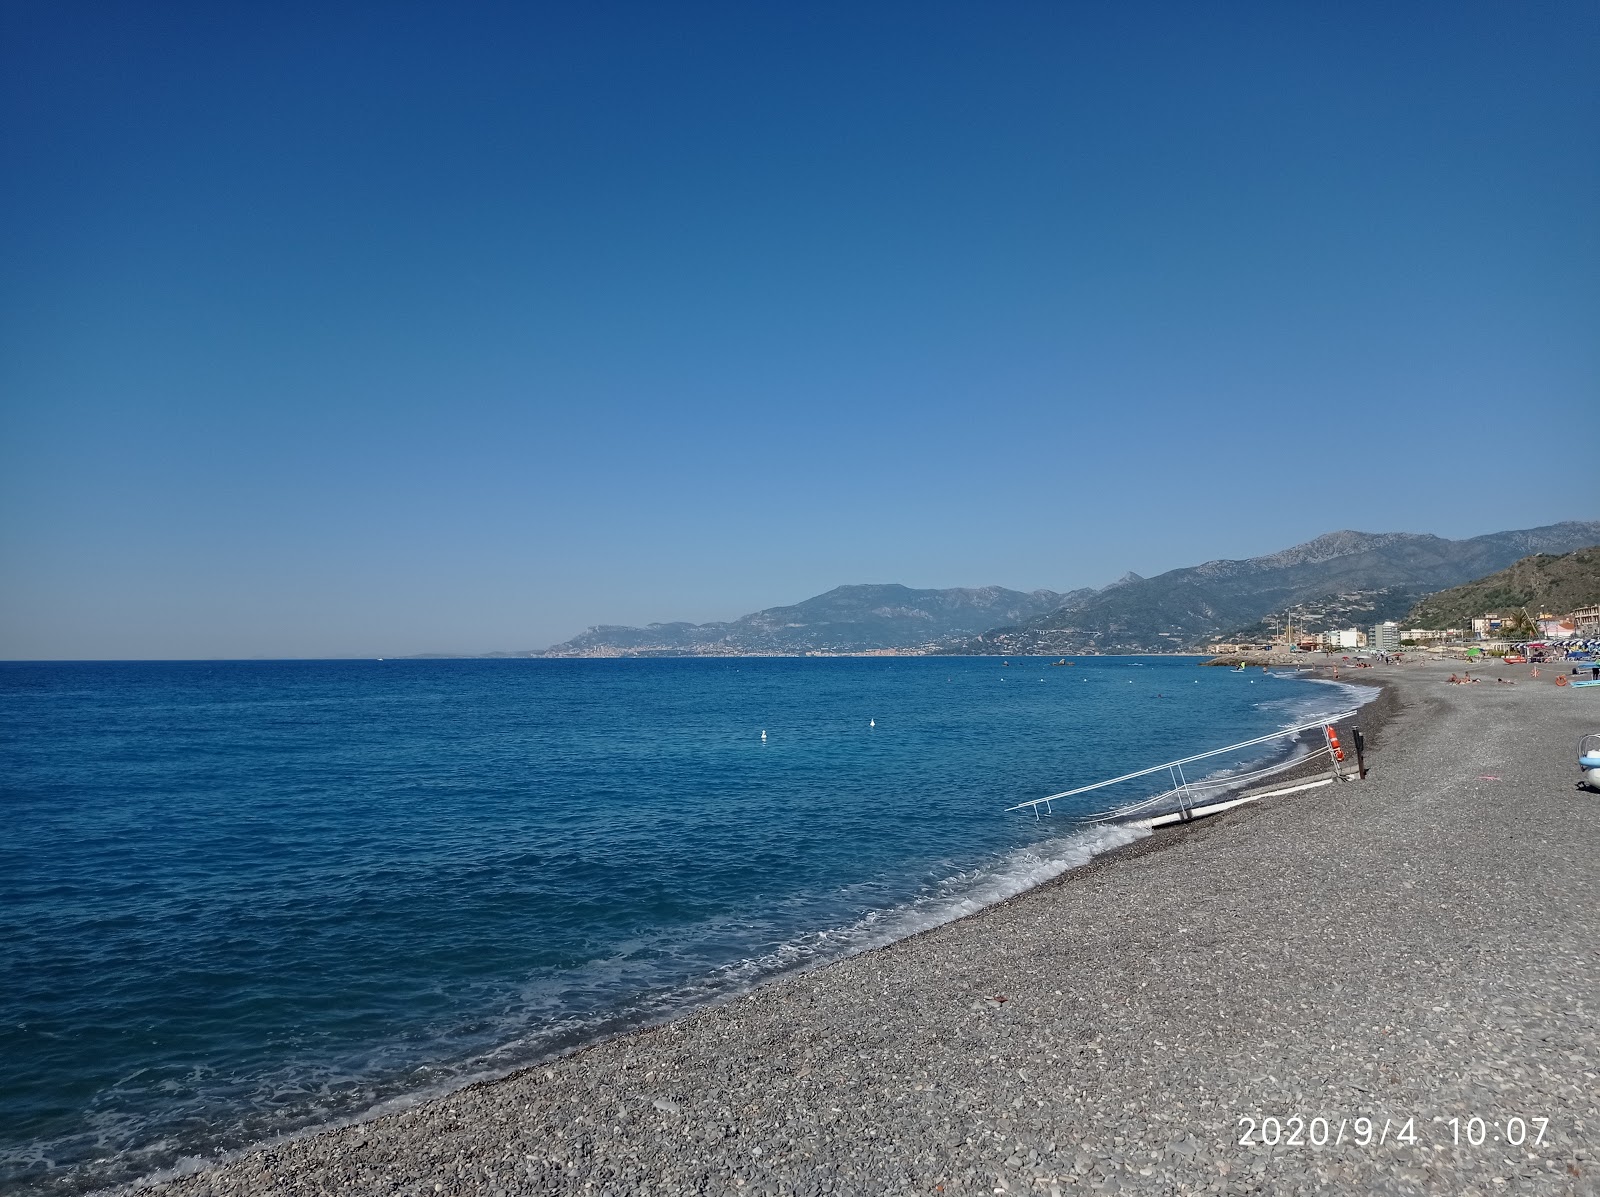 Foto av Spiaggia di Bordighera med medium nivå av renlighet